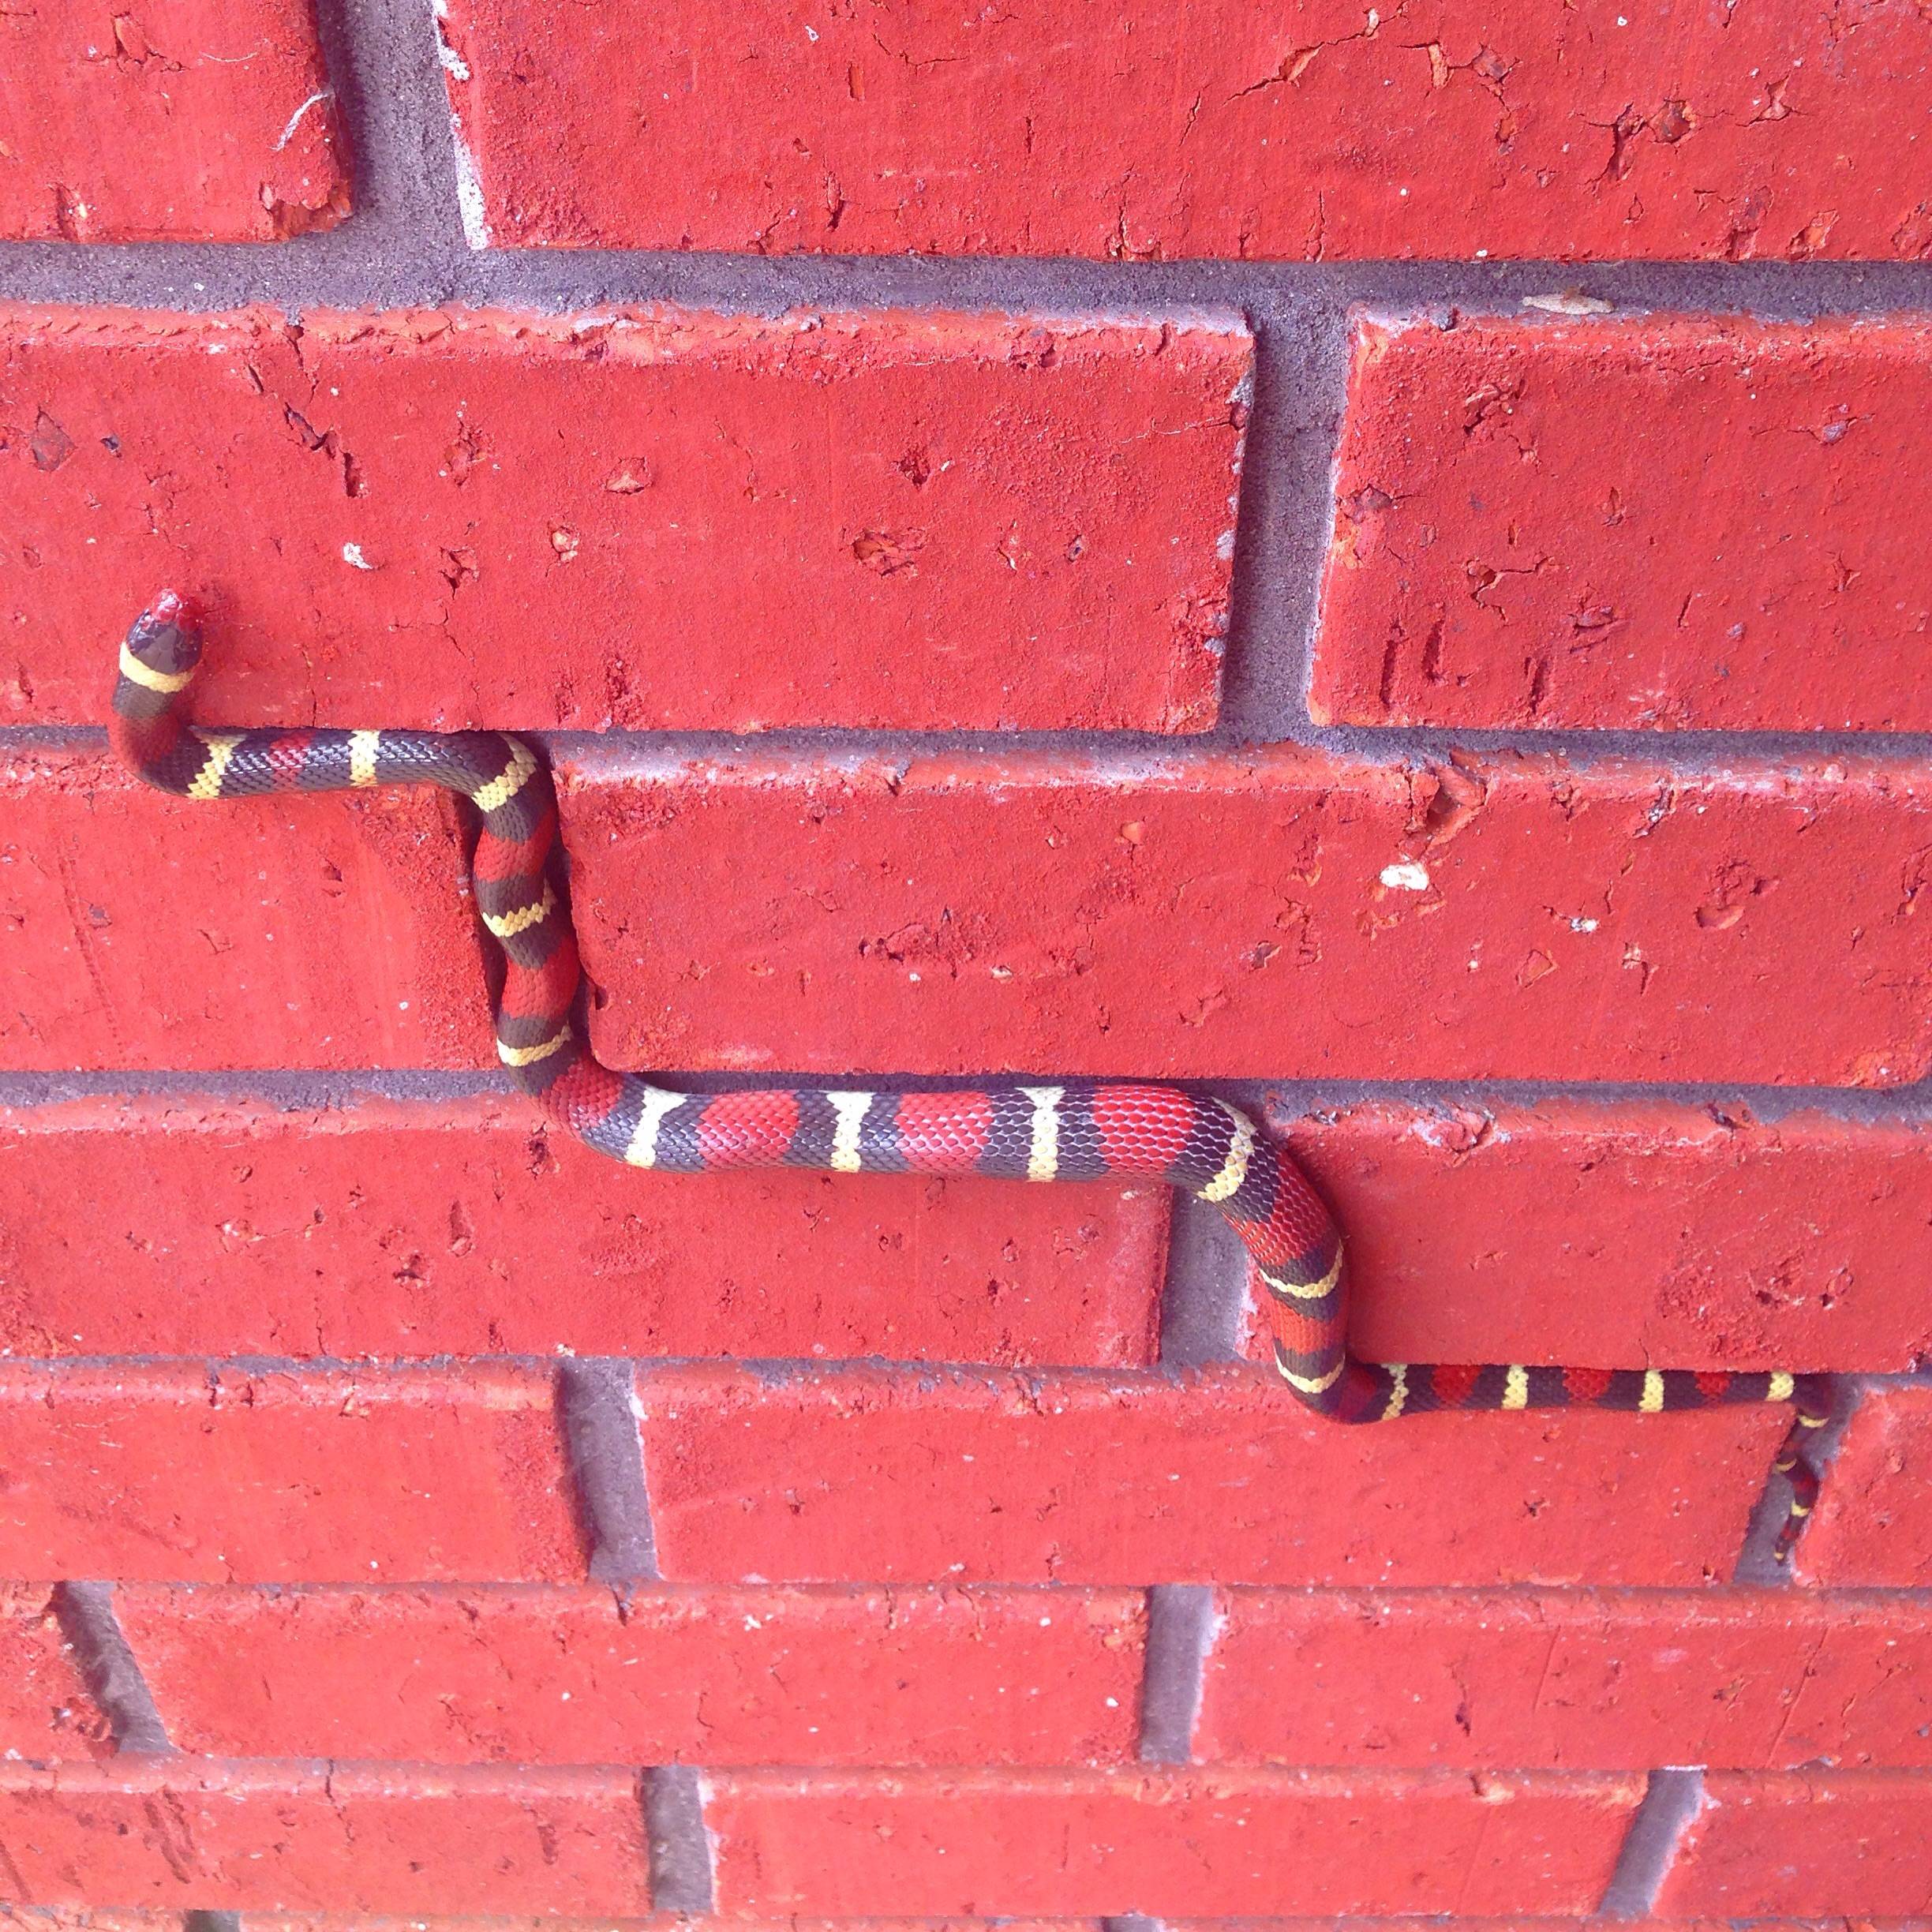 Snake climber making its way between bricks.